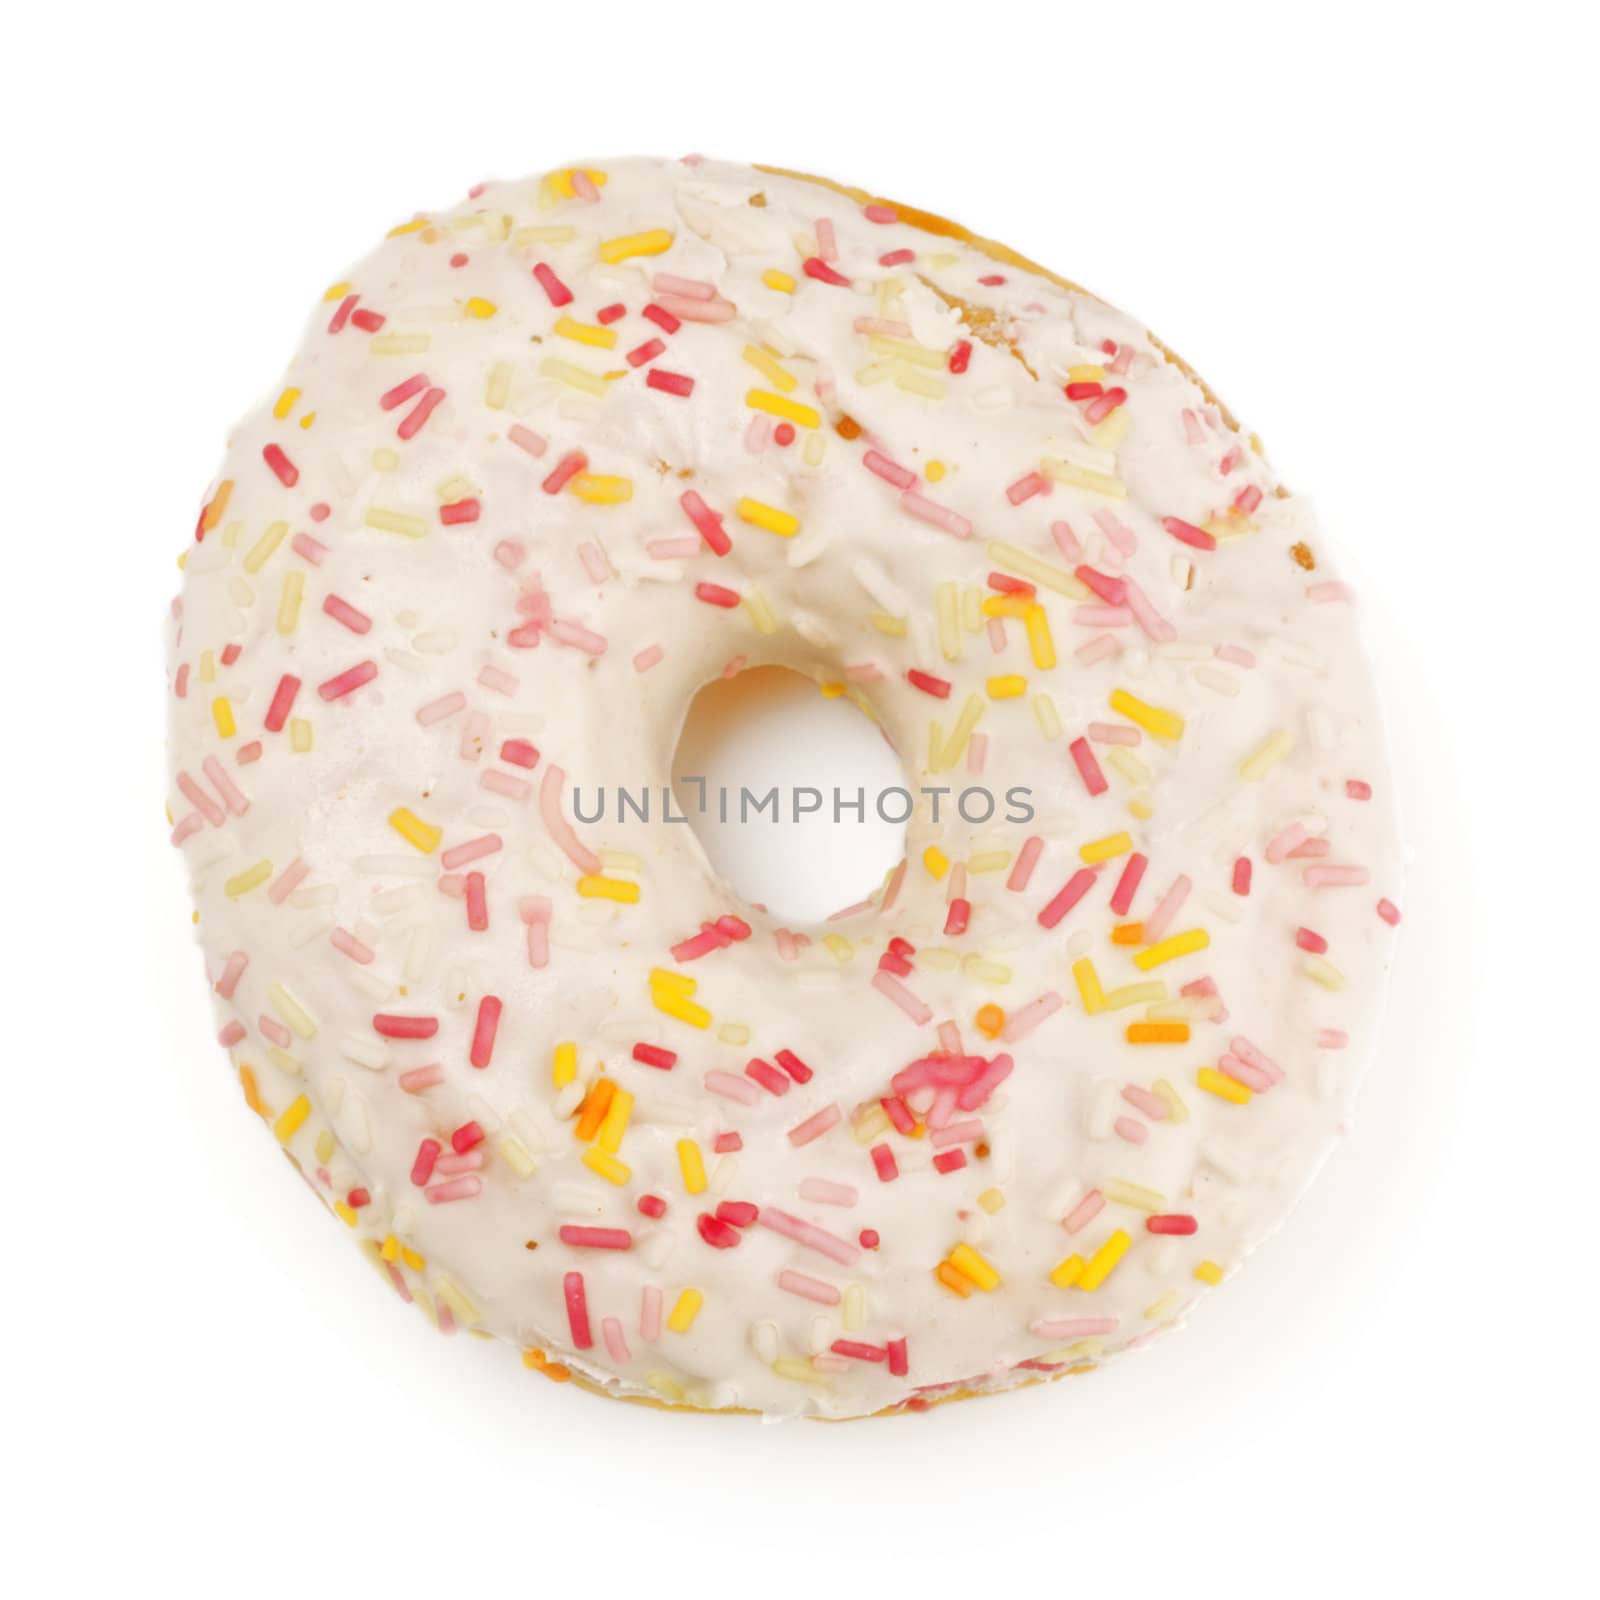 sugar glazed donut, isolated on white